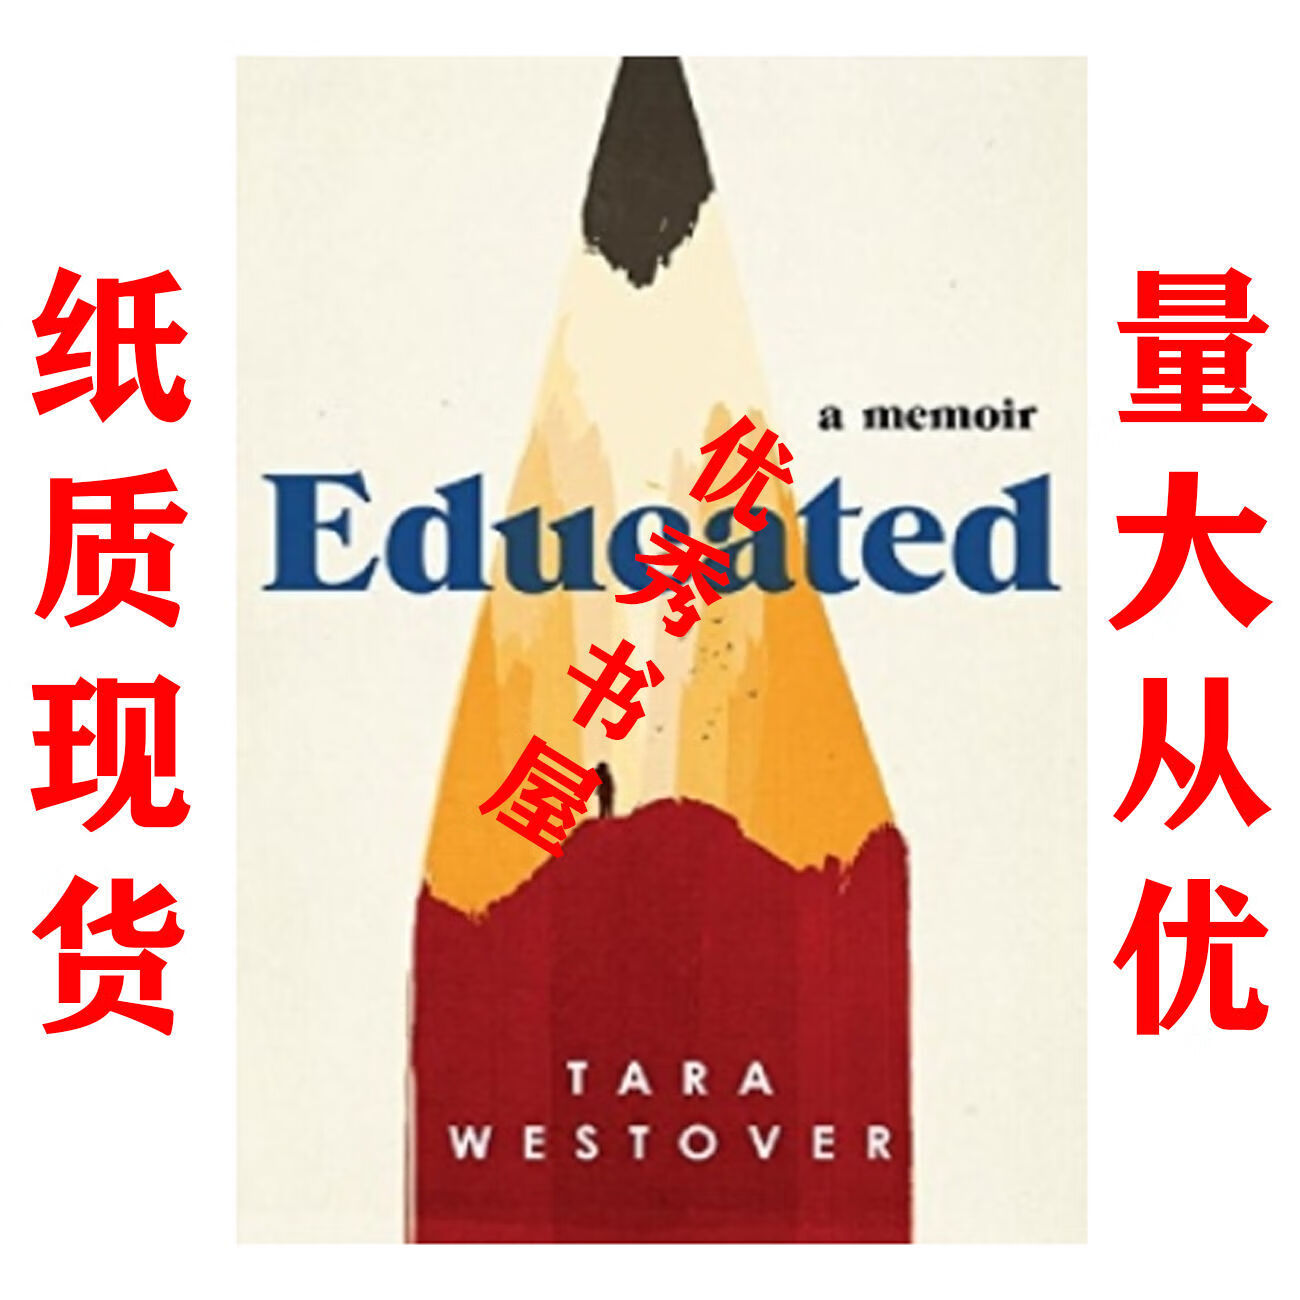 纸质现货Educated - Tara Westover azw3格式下载